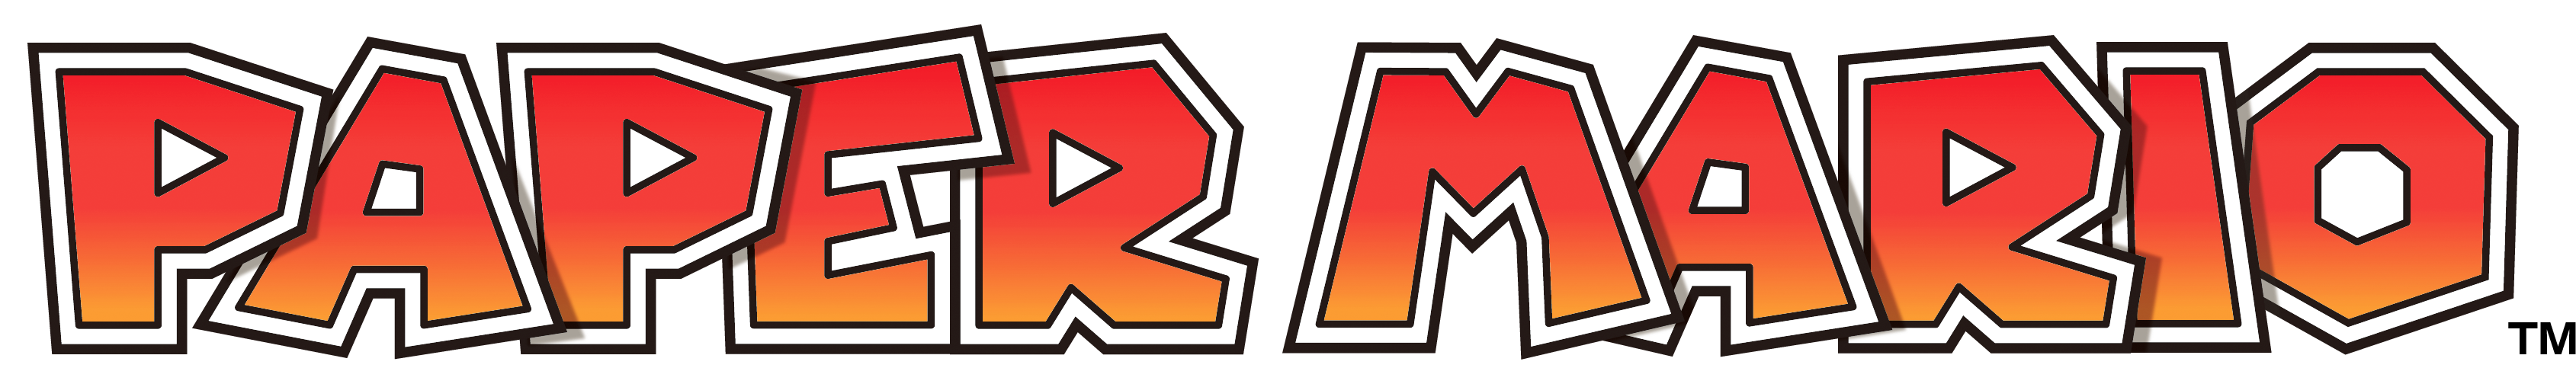 The Paper Mario series logo (originally a beta logo for Paper Mario: Sticker Star).